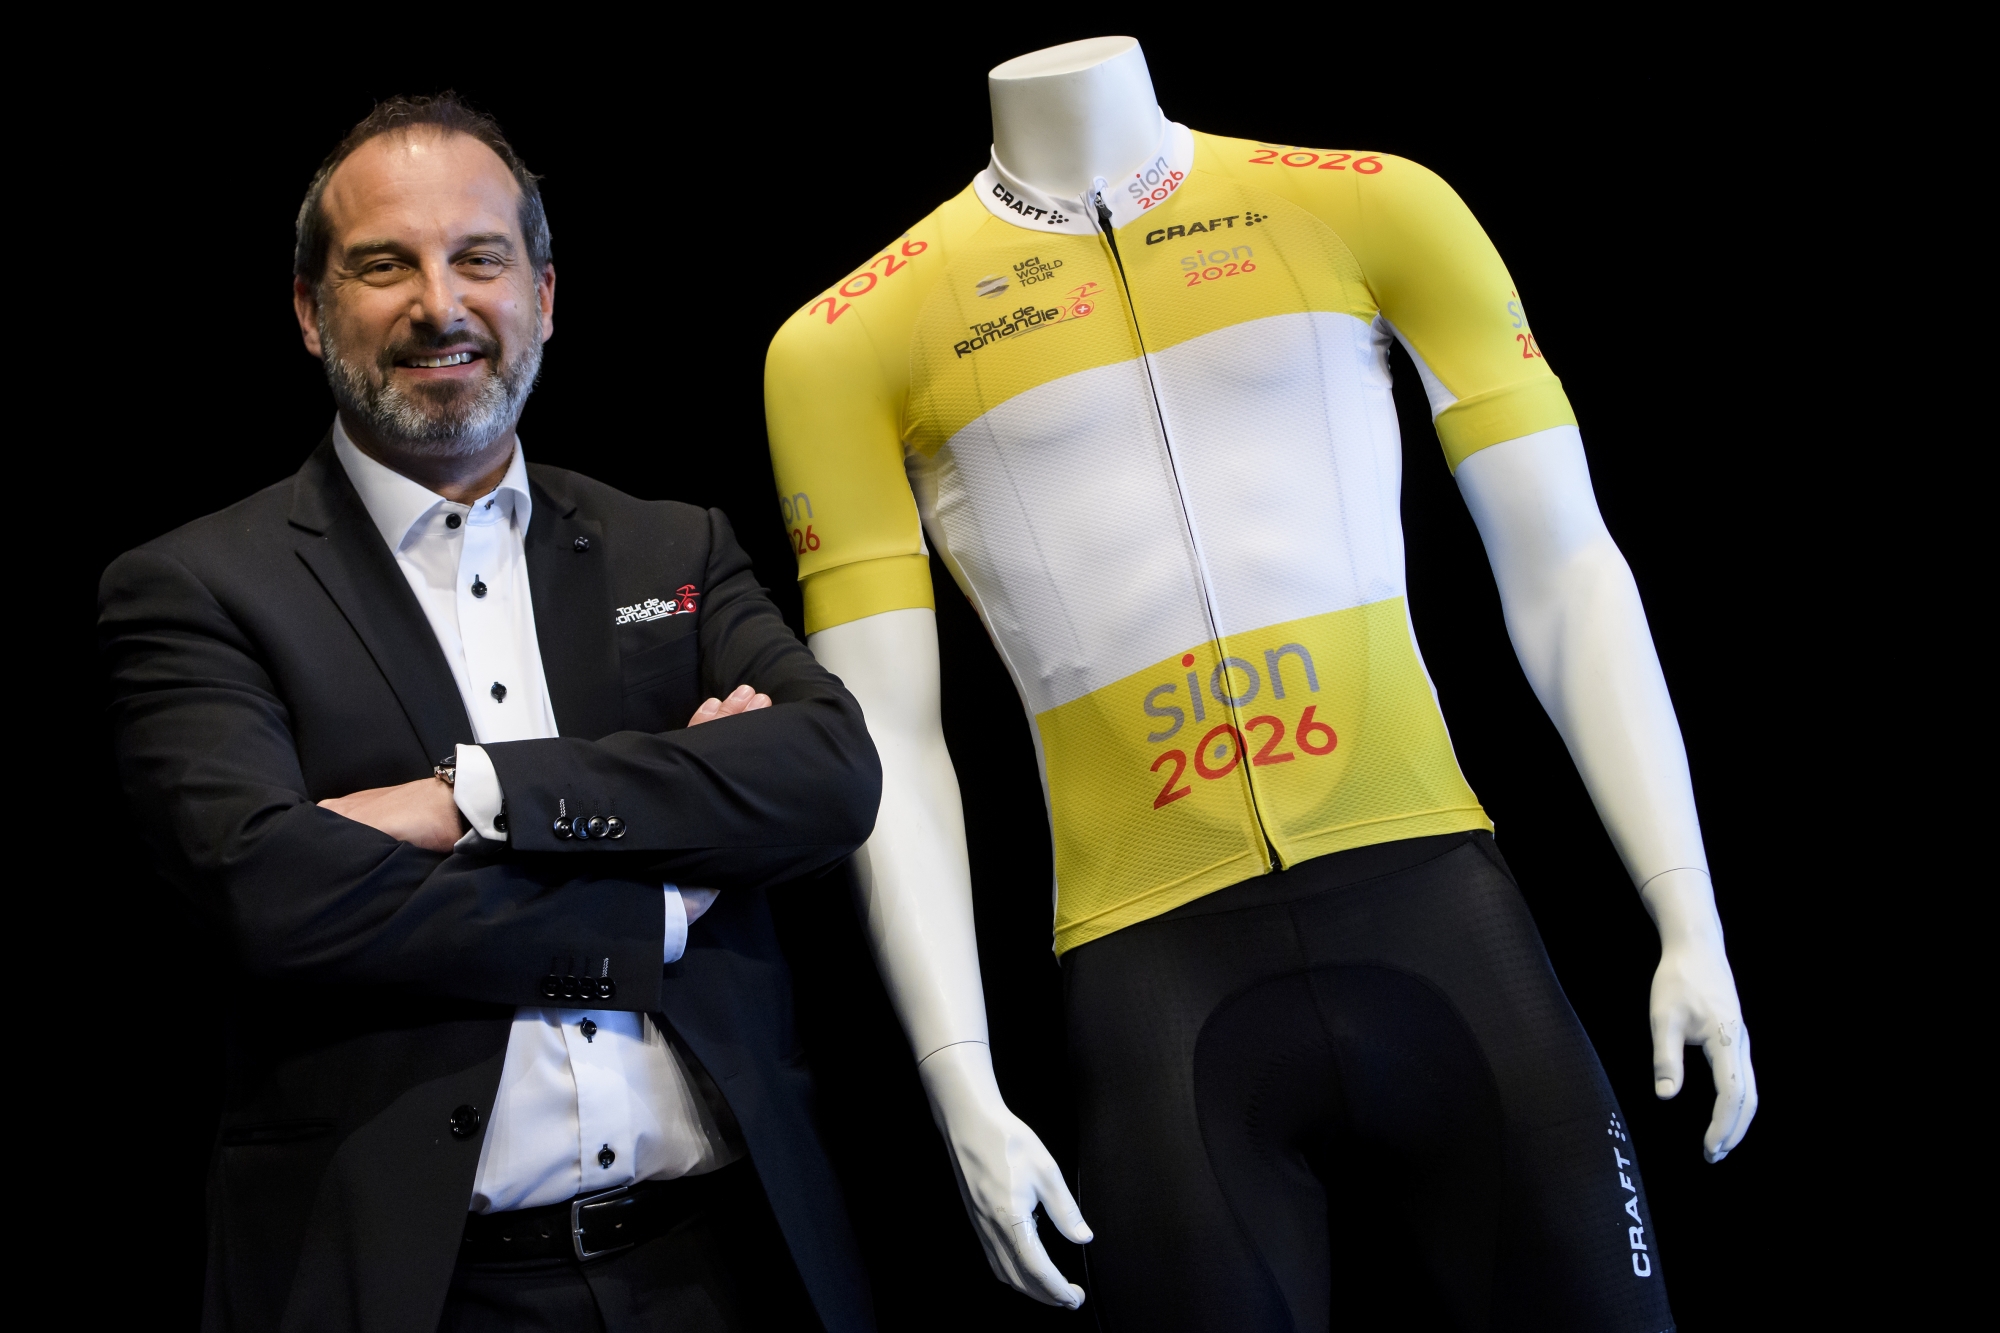 Richard Chassot, directeur général du Tour de Romandie, au côté du maillot jaune de leader, lequel arbore le logo de la candidature Sion 2026.